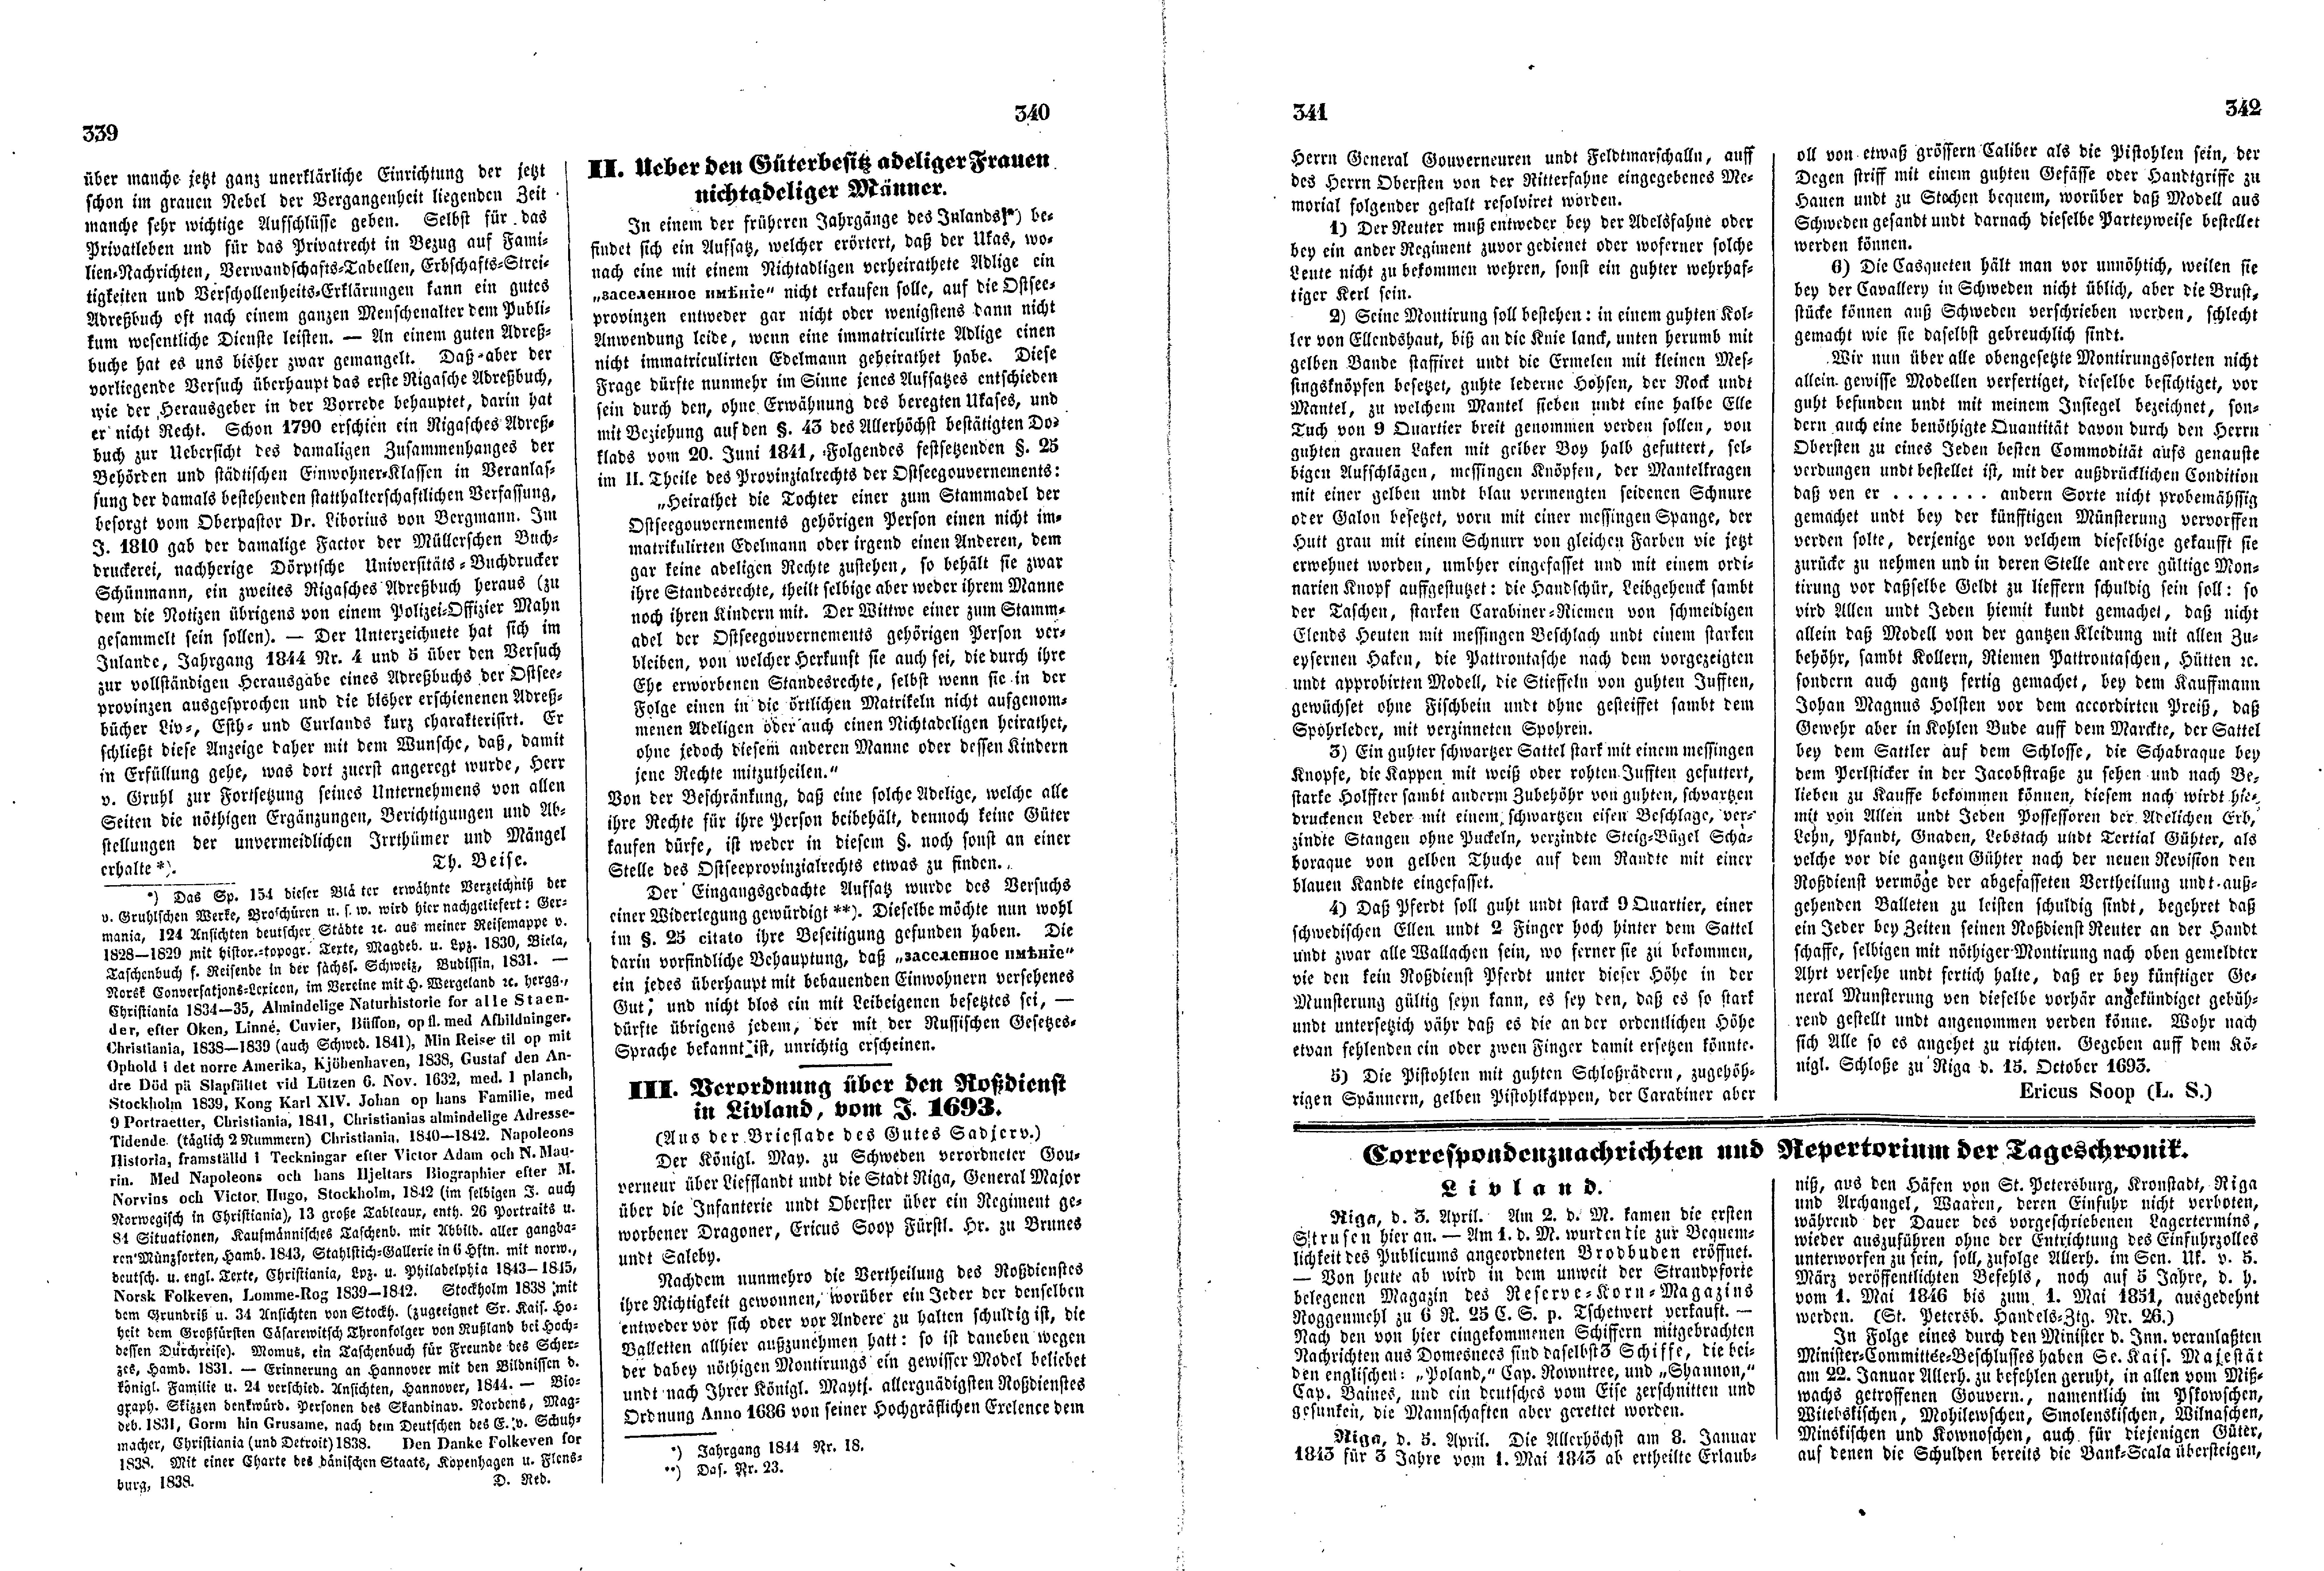 Das Inland [11] (1846) | 90. (339-342) Основной текст